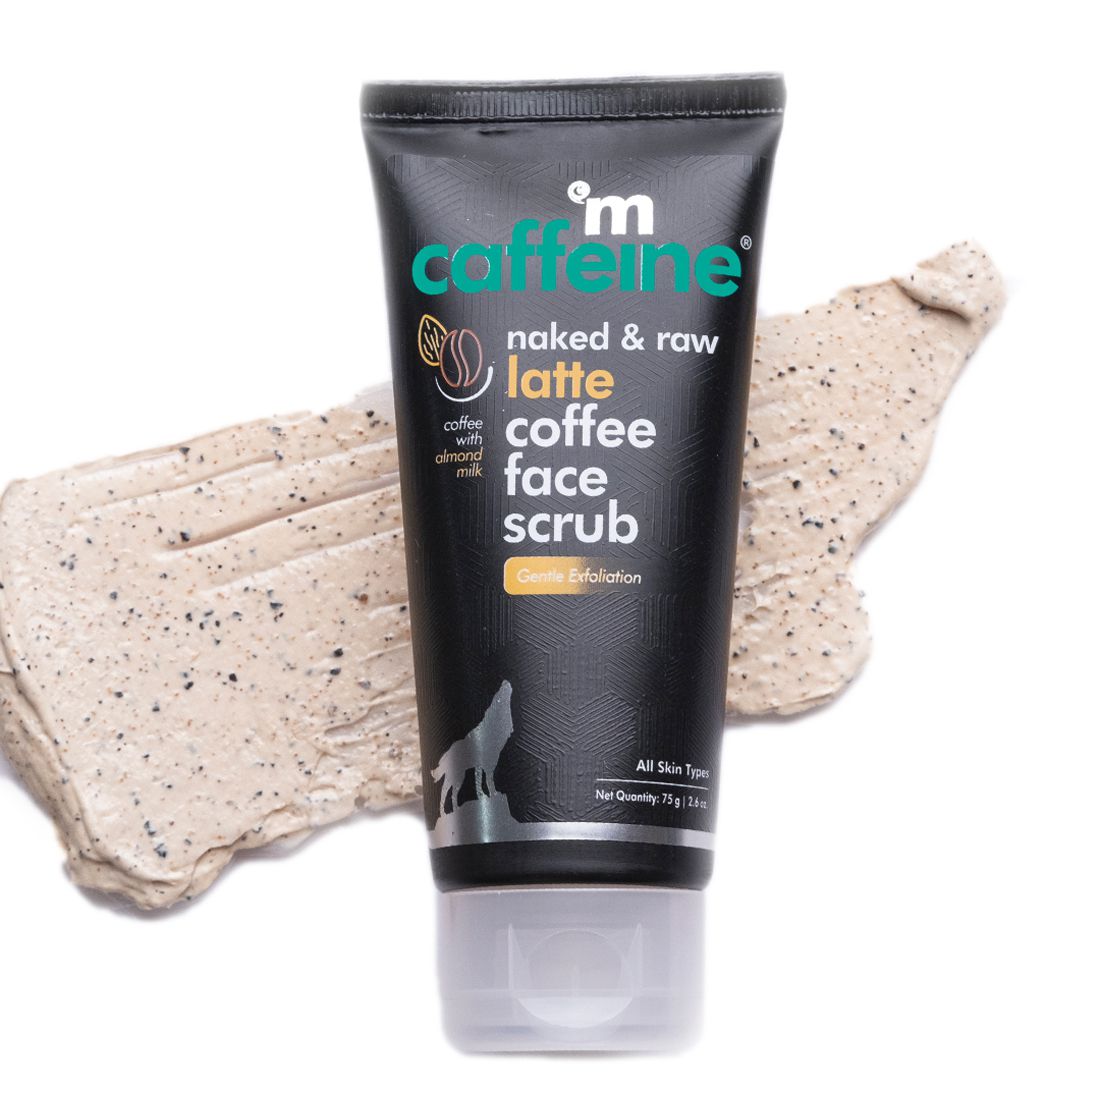     			mCaffeine Latte Coffee Gentle Exfoliating Face Scrub for Moisture Retention, 75g